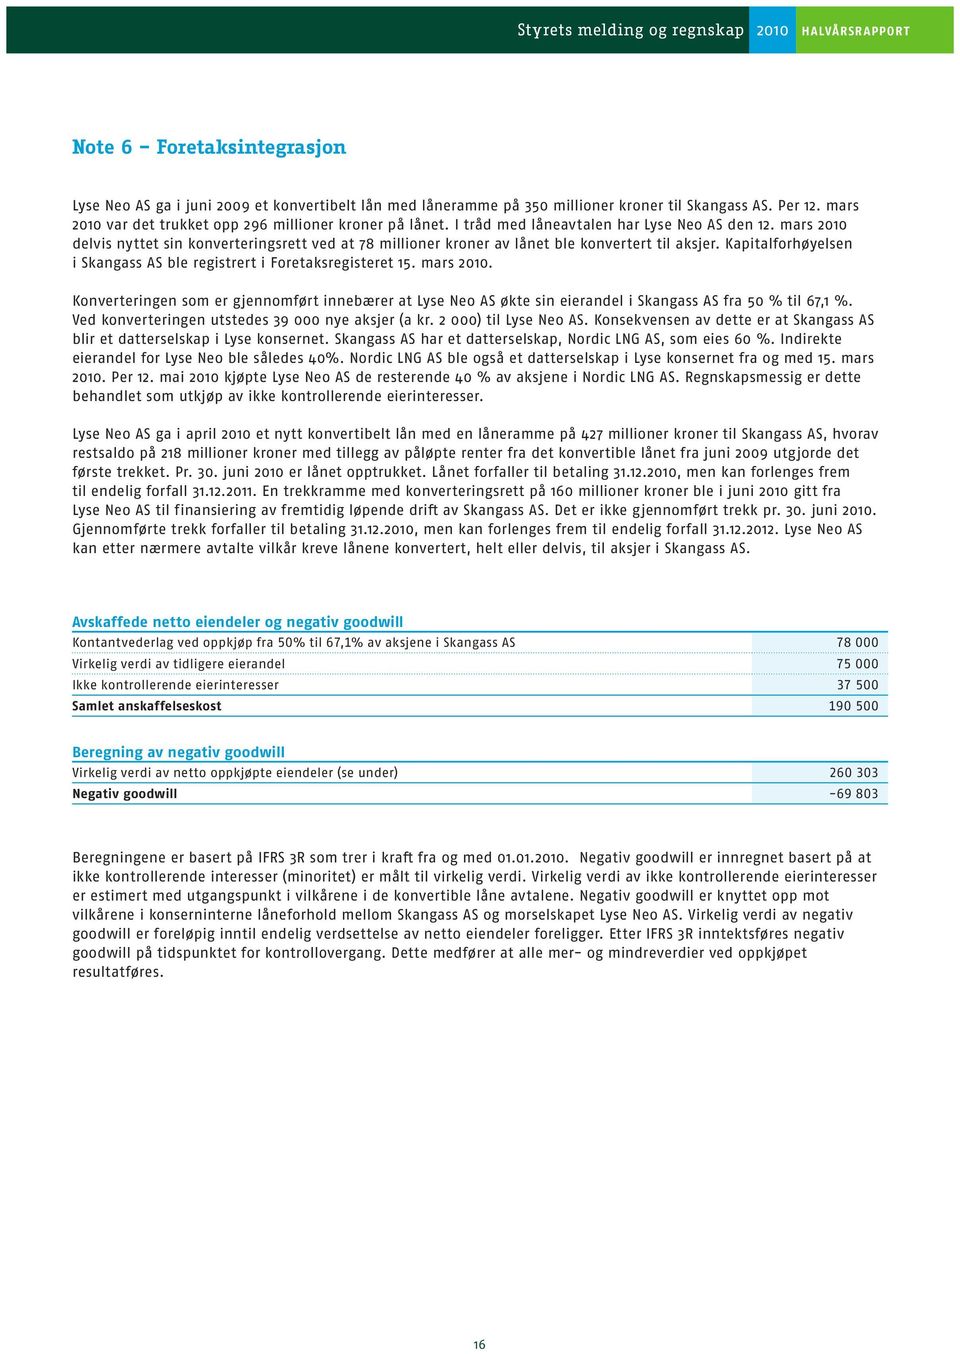 Kapitalforhøyelsen i Skangass AS ble registrert i Foretaksregisteret 15. mars. Konverteringen som er gjennomført innebærer at Lyse Neo AS økte sin eierandel i Skangass AS fra 50 % til 67,1 %.